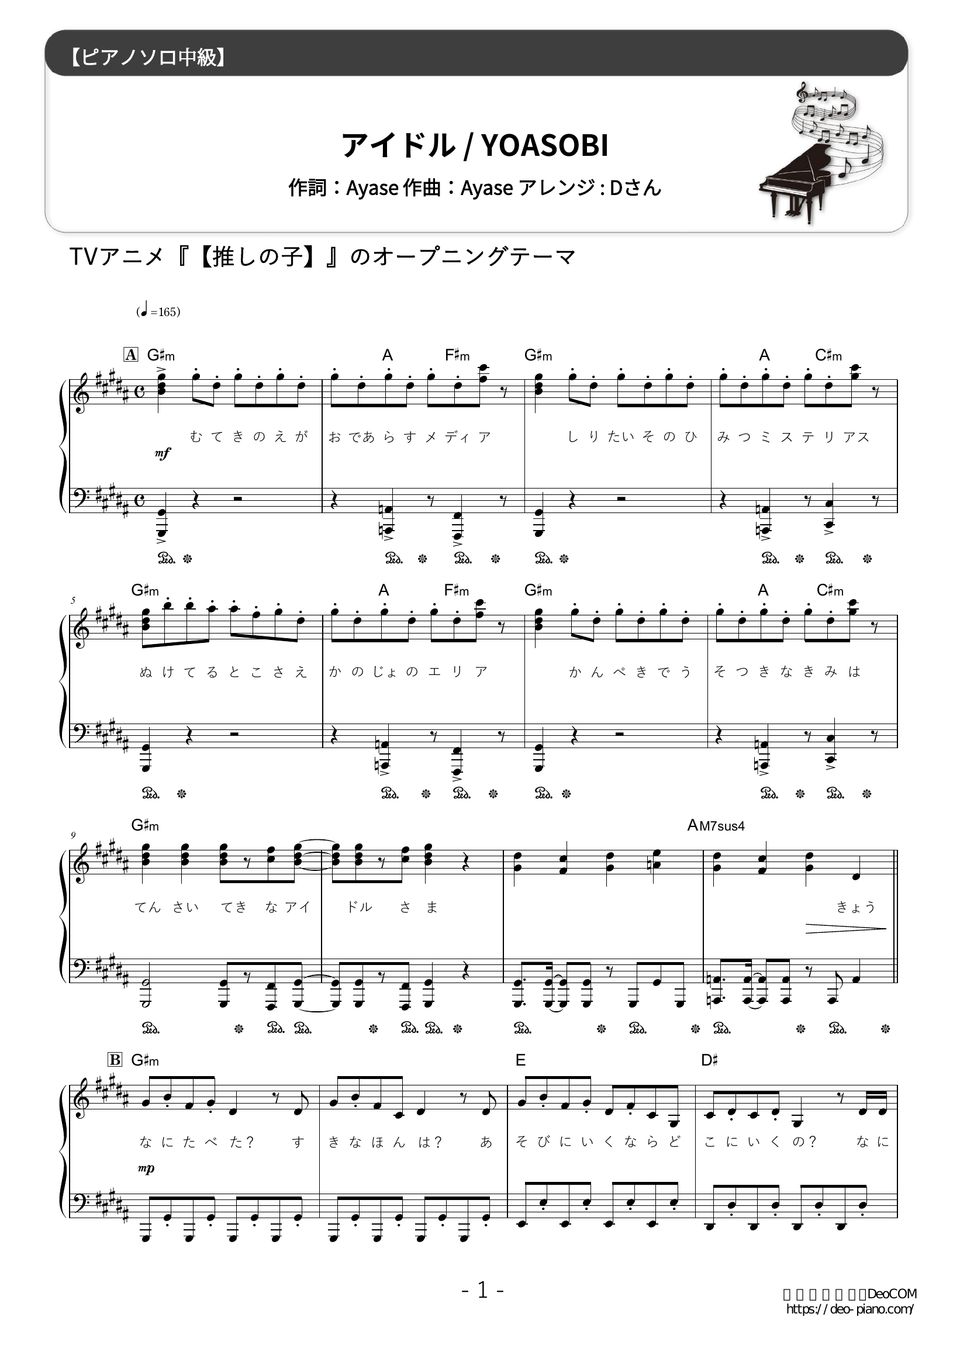 YOASOBI - アイドル (難易度:★★★☆☆/歌詞・コード・ペダル付き) 楽譜 by Dさん